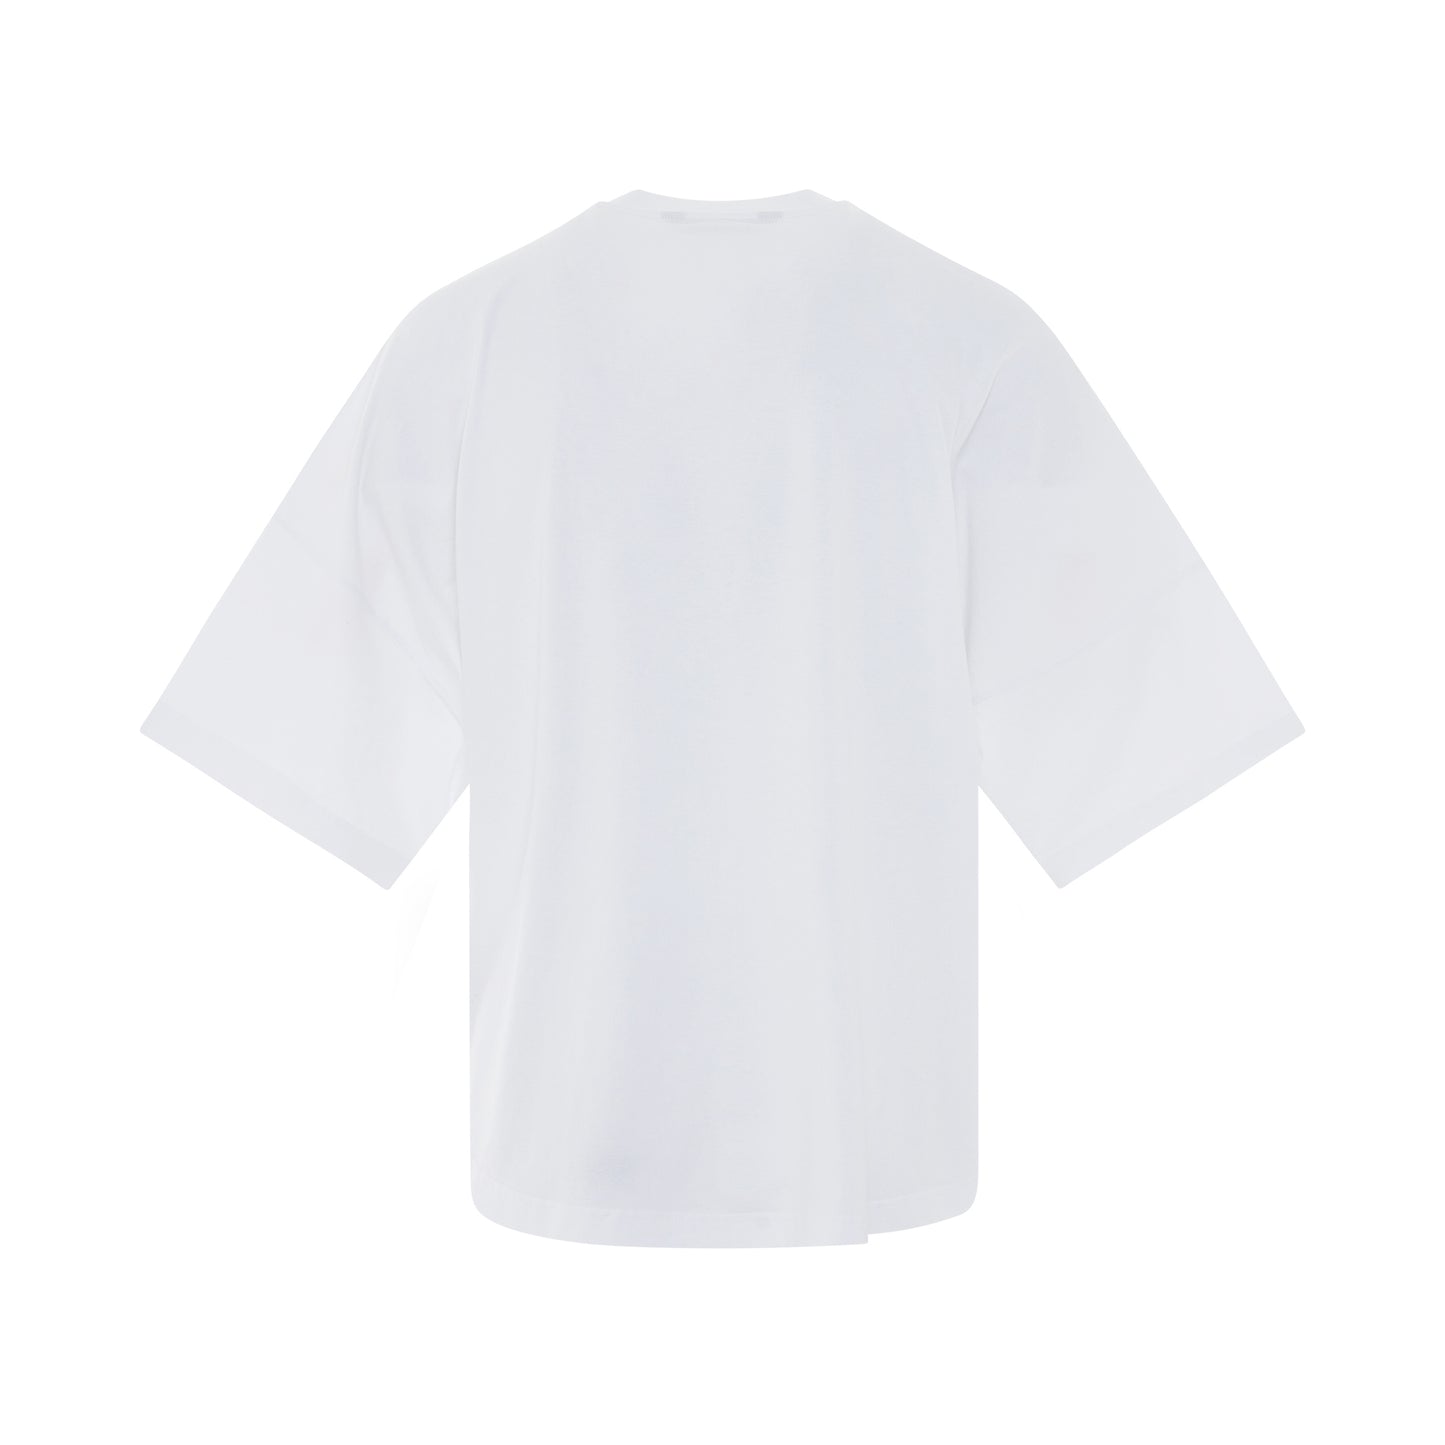 Seasonal Logo Over T-Shirt in White/Black